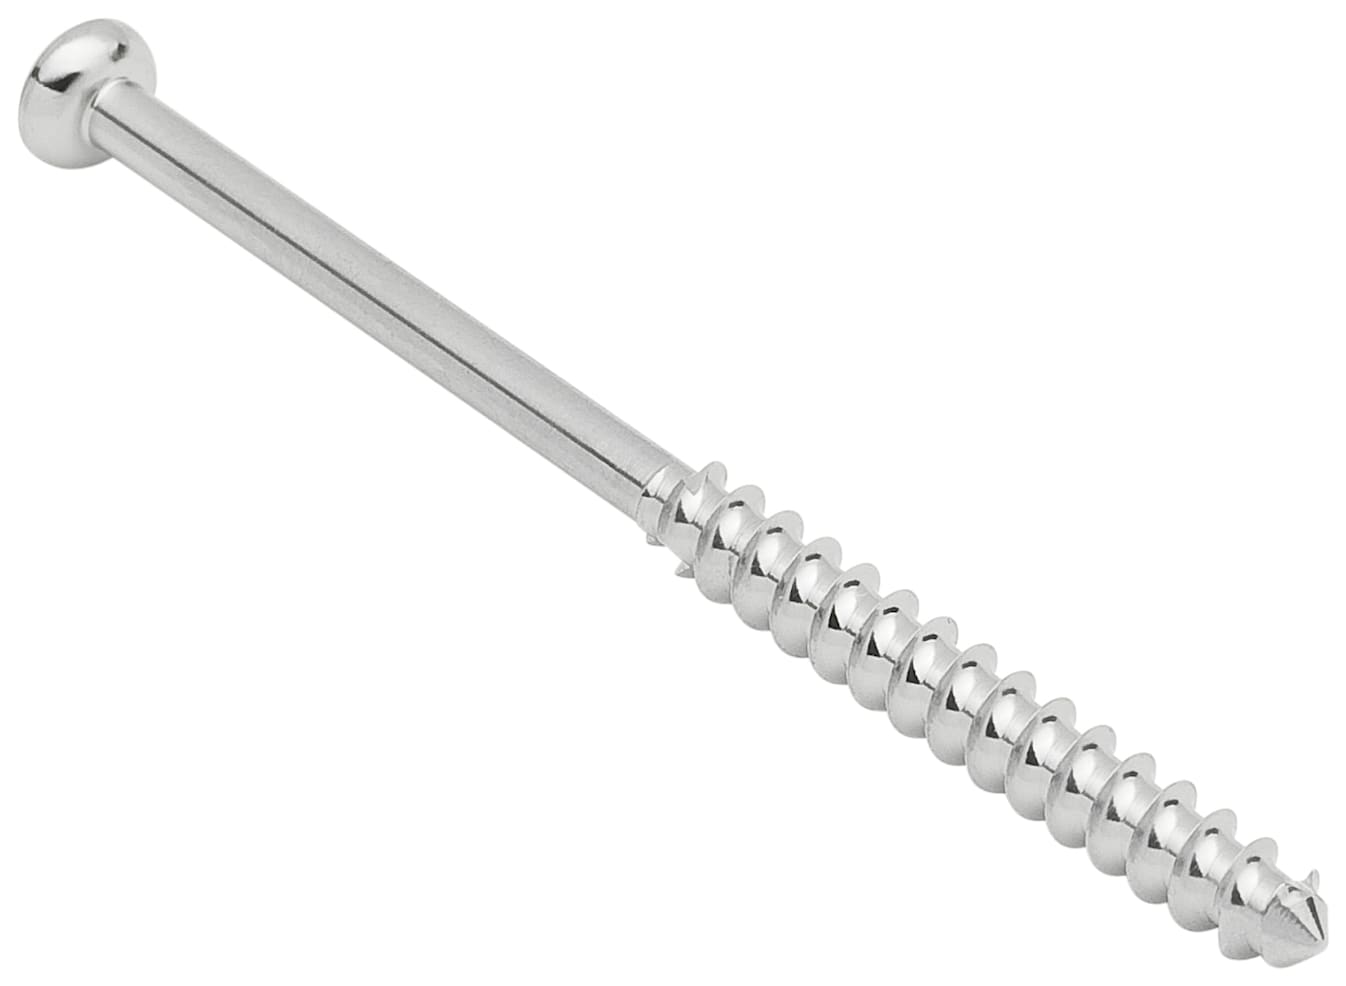 Low Profil Schraube, Stahl, langes Gewinde, 4.0 mm x 60 mm, unsteril, IM